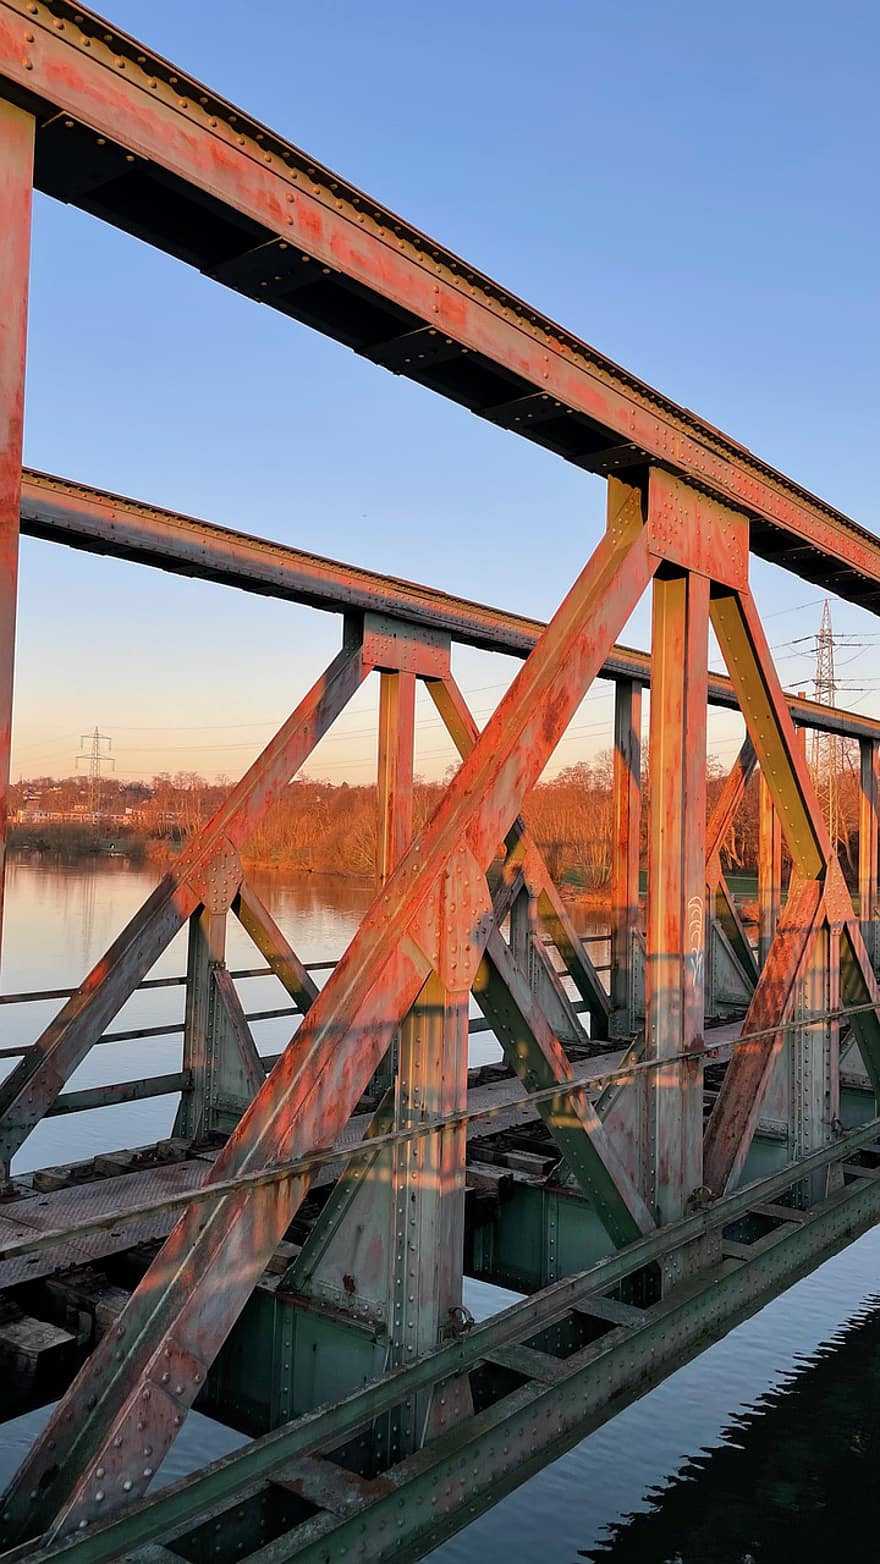 สะพาน, สะพานเหล็ก, สะพานรถไฟ, Ruhr, ไหล, โบคุ่ม, สะพานเก่า, อุตสาหกรรม, น้ำ, สถาปัตยกรรม, เหล็ก